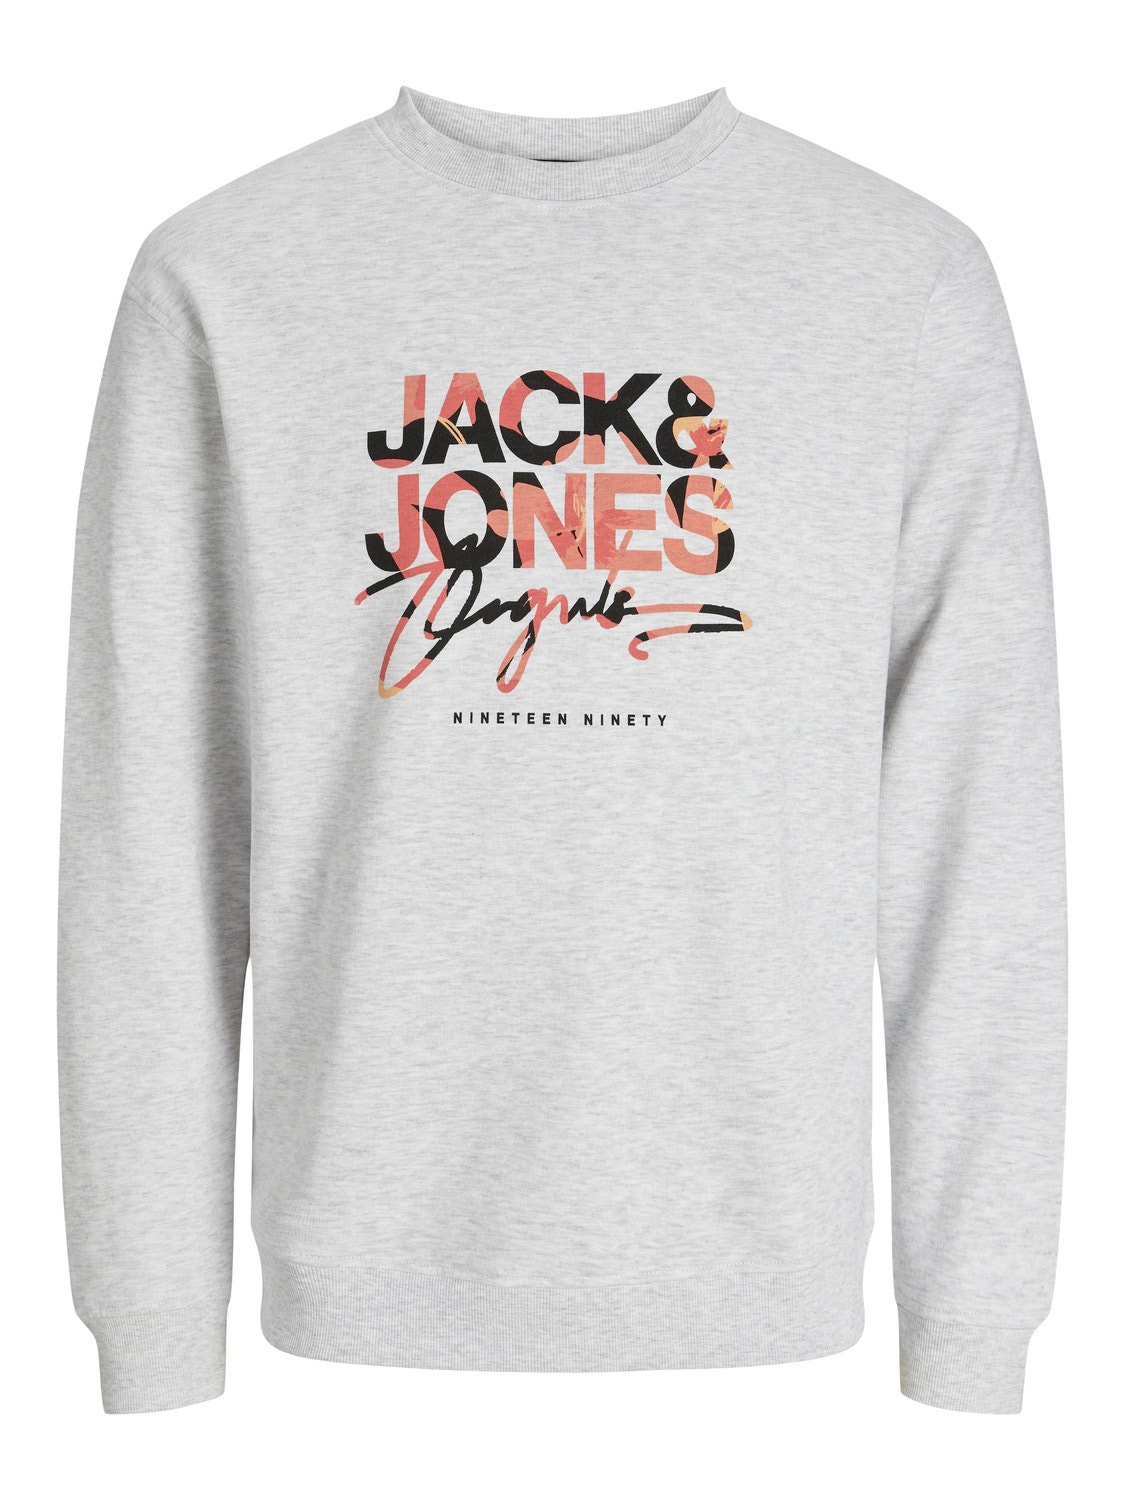 Jack & Jones Gedruckt Sweatshirt mit Rundhals Für jungs -Bright White - 12257604